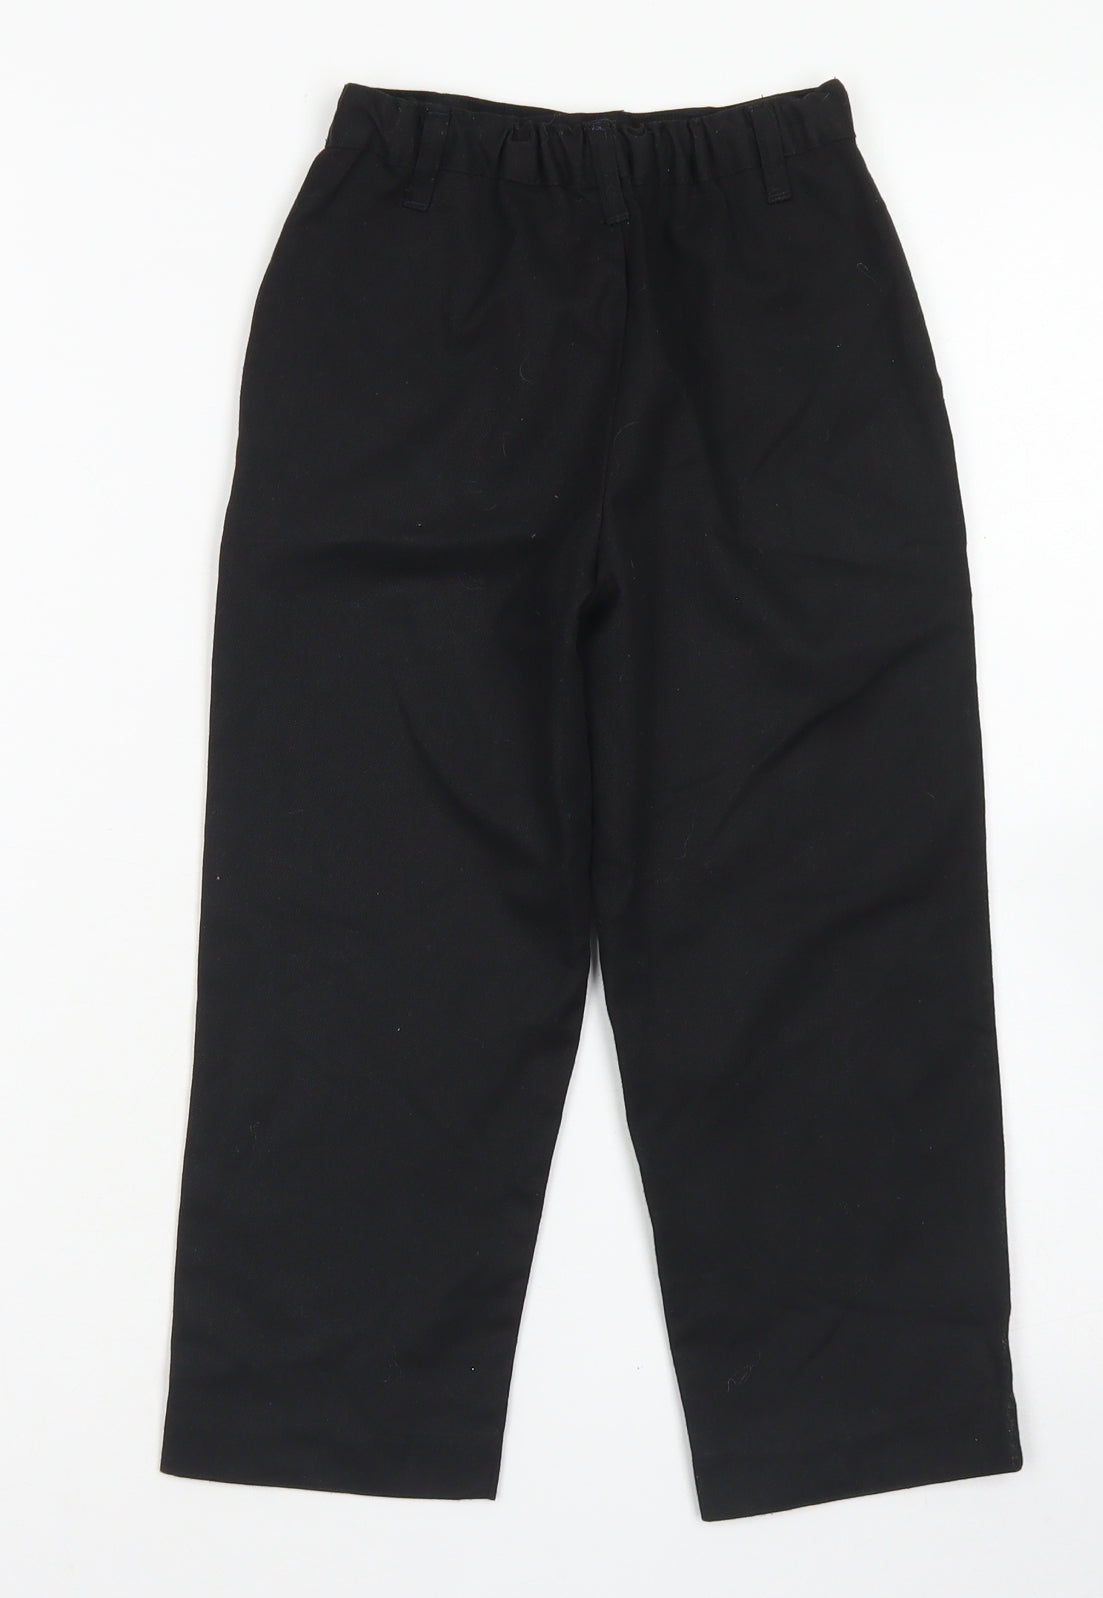 Nutmeg Boys Black  Polyester Dress Pants Trousers Size 4-5 Years  Regular Hook & Eye - School wear